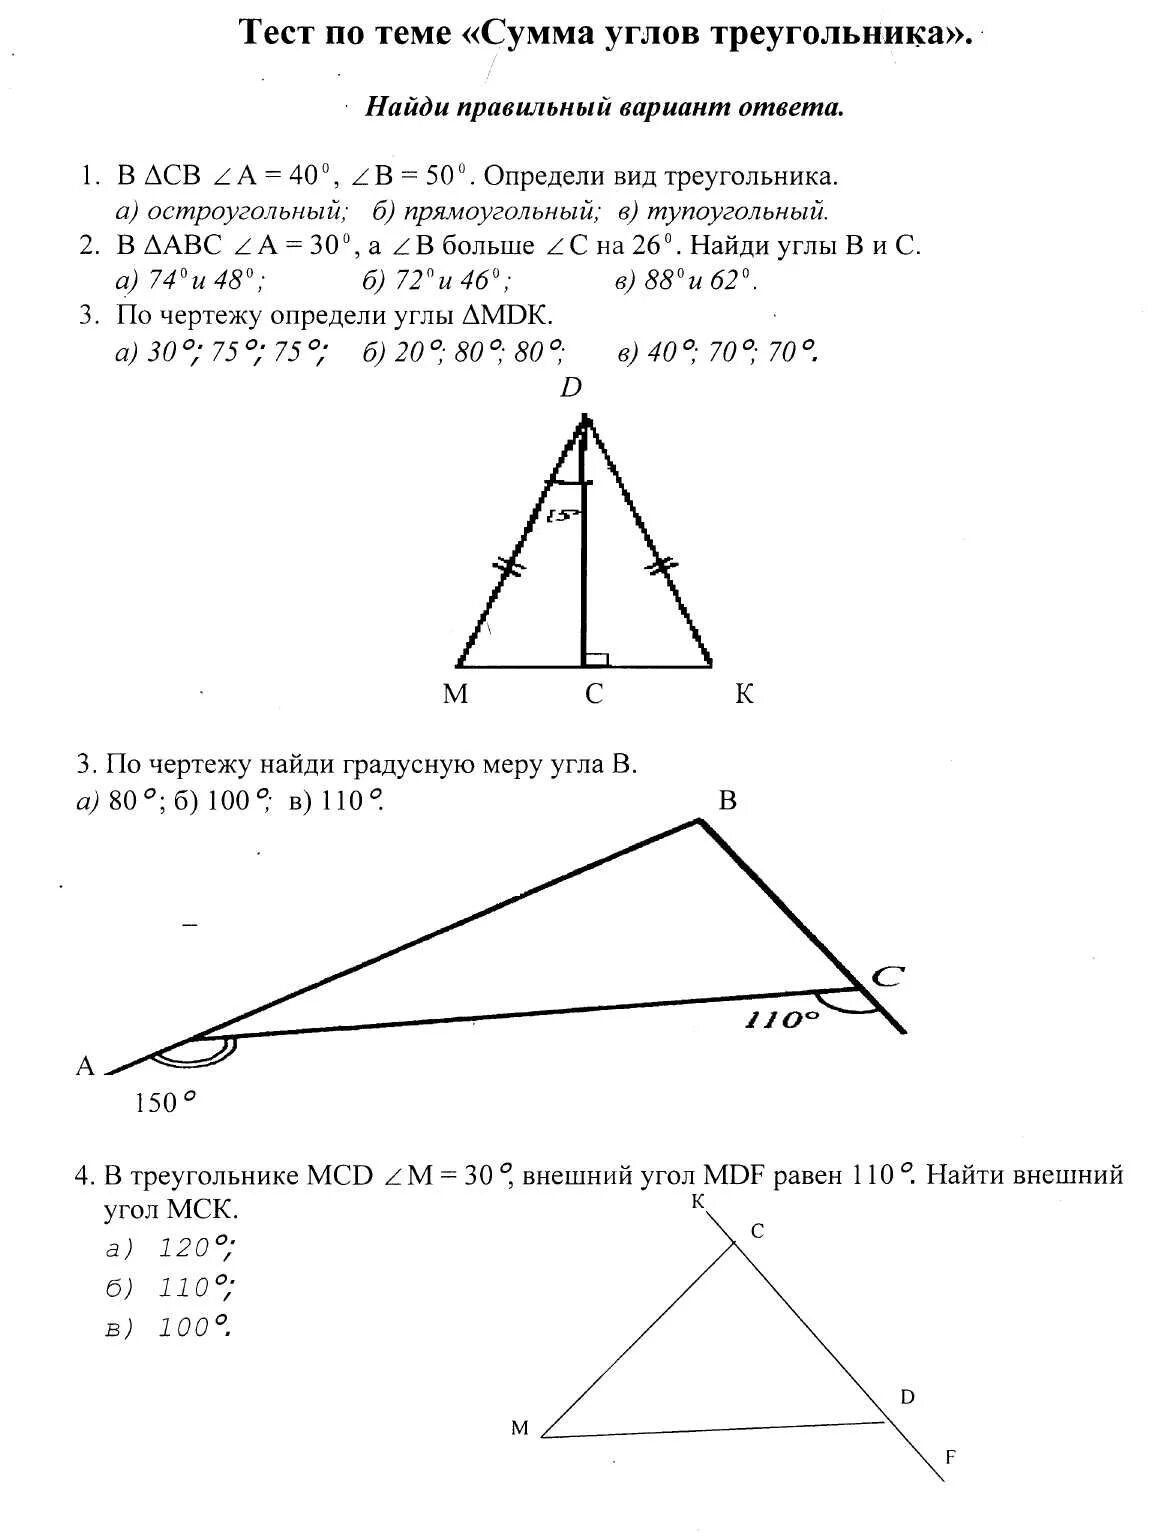 Геометрия 7 класс атанасян контрольные работы треугольники. Тест по теме треугольники 7 класс Атанасян. Тест по геометрии 7 класс Атанасян сумма углов треугольника. Контрольная работа по геометрии 7 класс углы треугольника. Тест по теме треугольники 7 класс Атанасян с ответами.